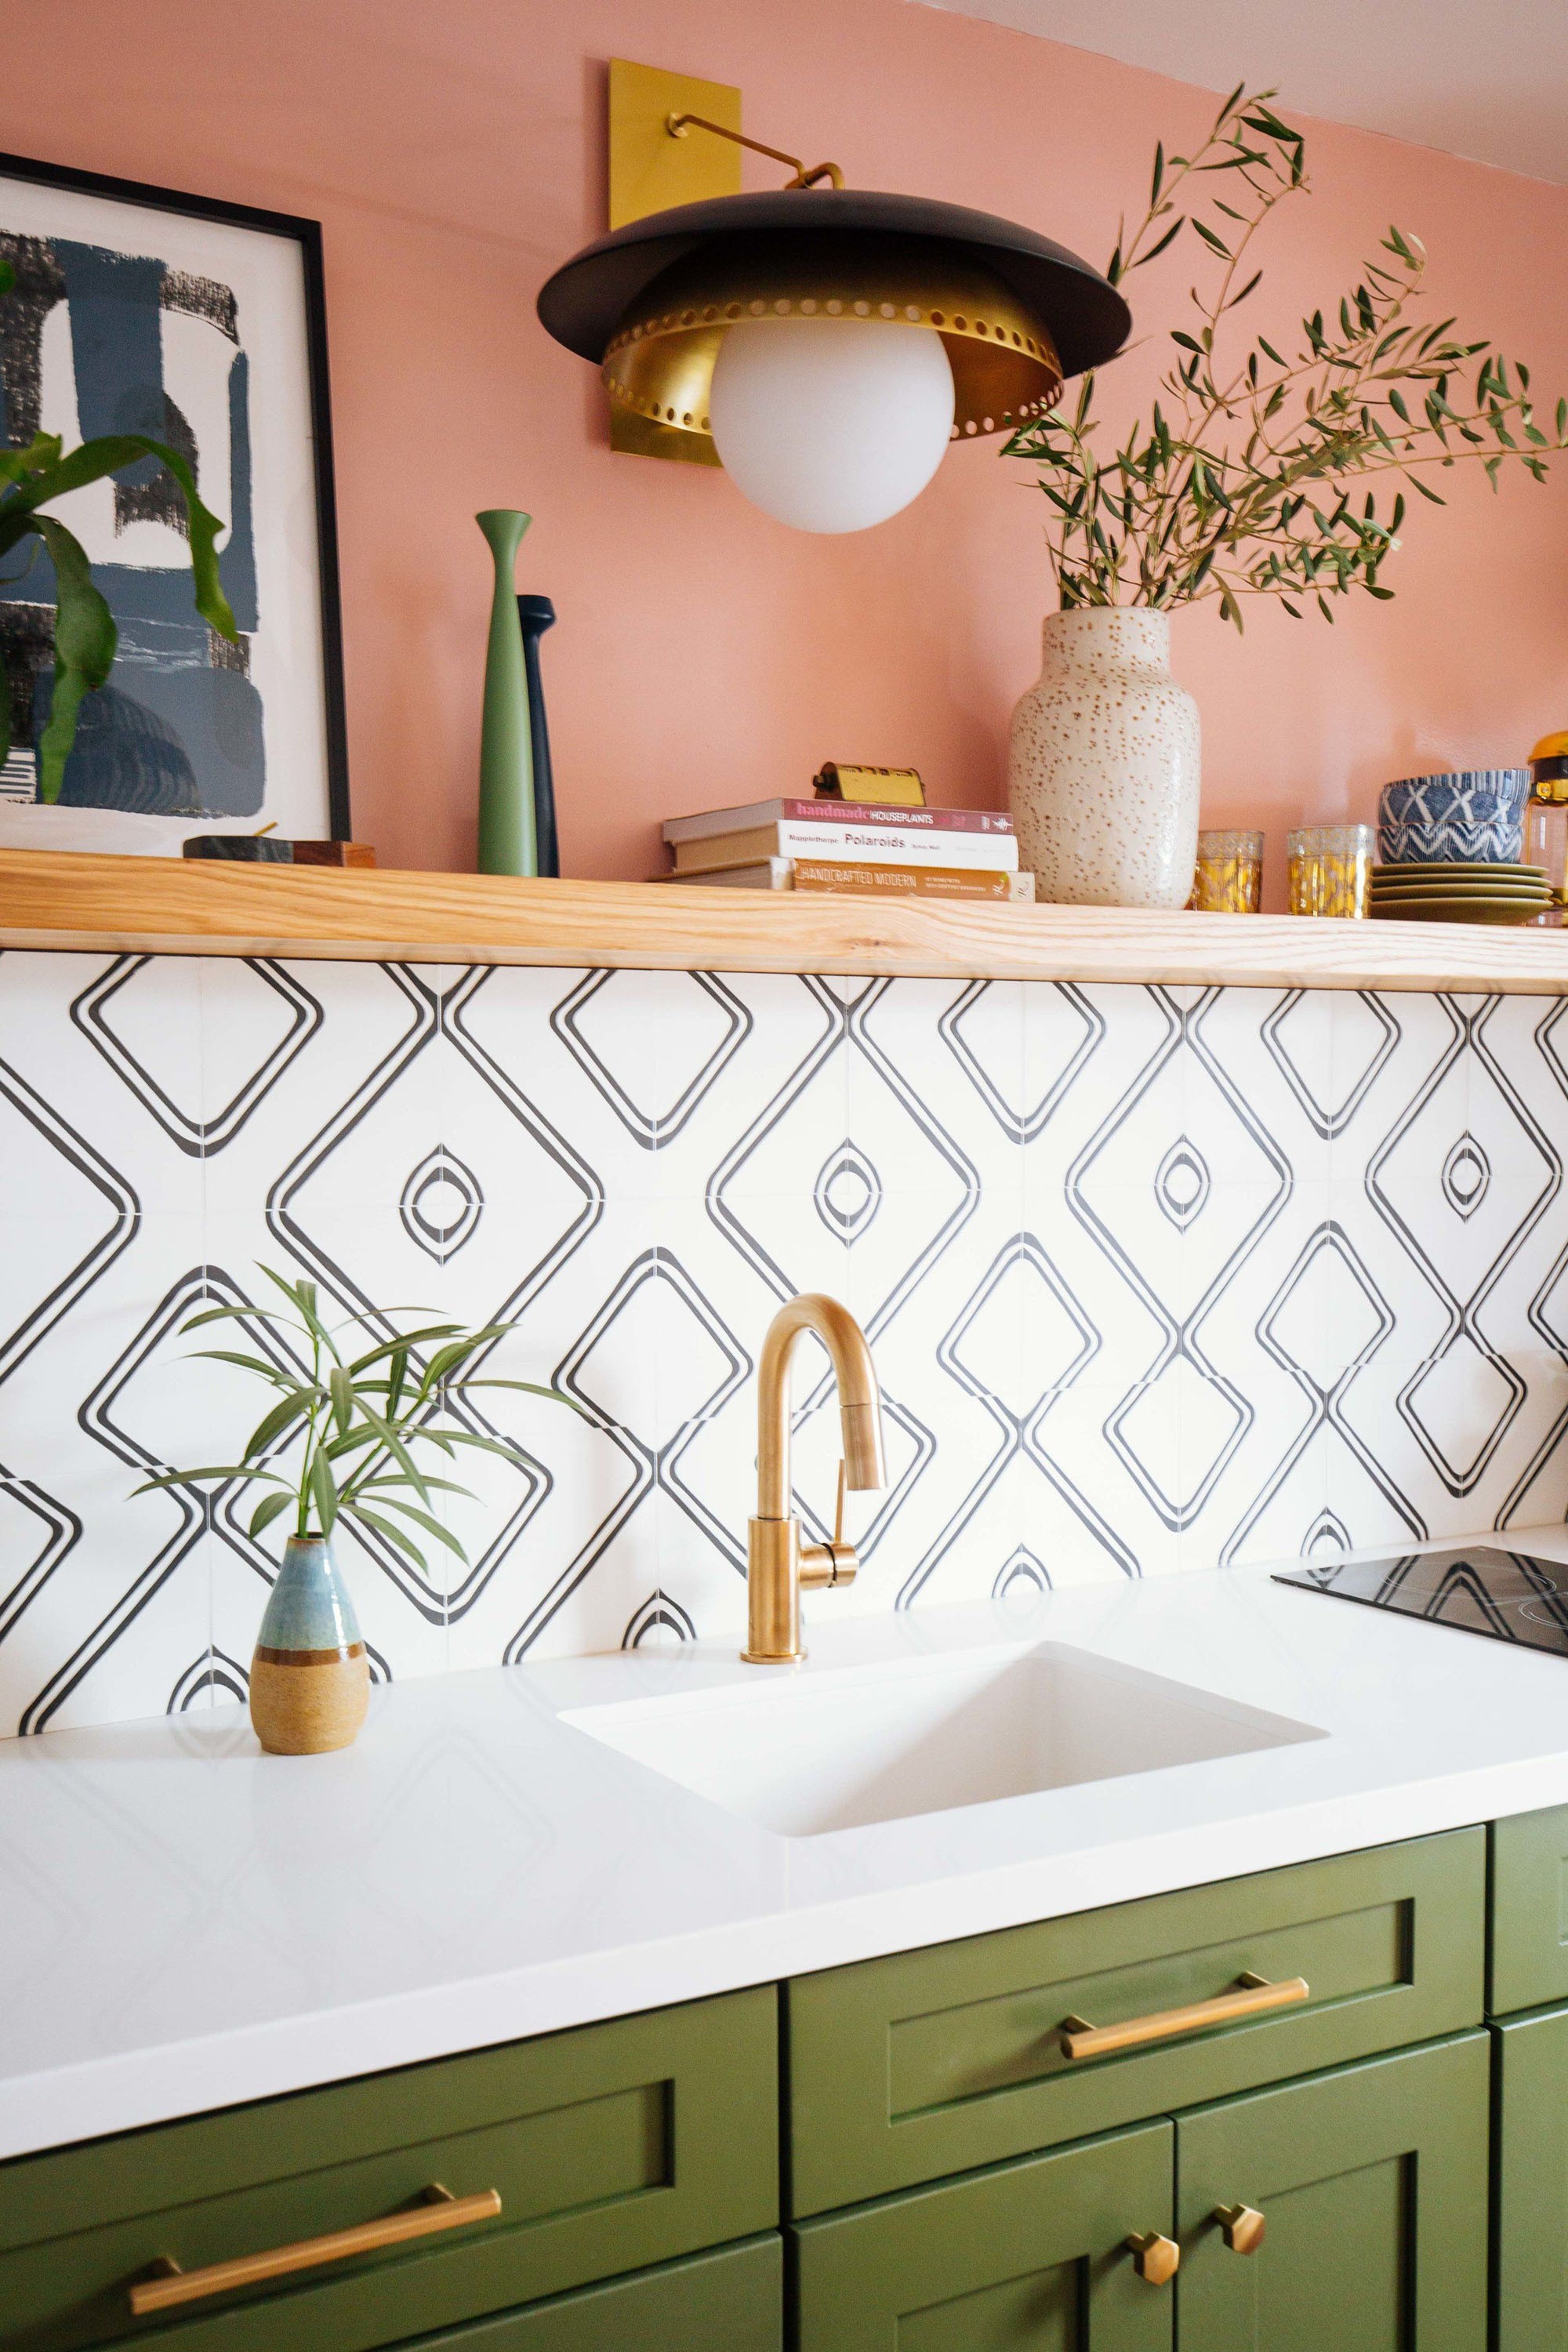 Décor dia: cozinha verde e rosa com azulejos geométricos (Foto: Divulgação)